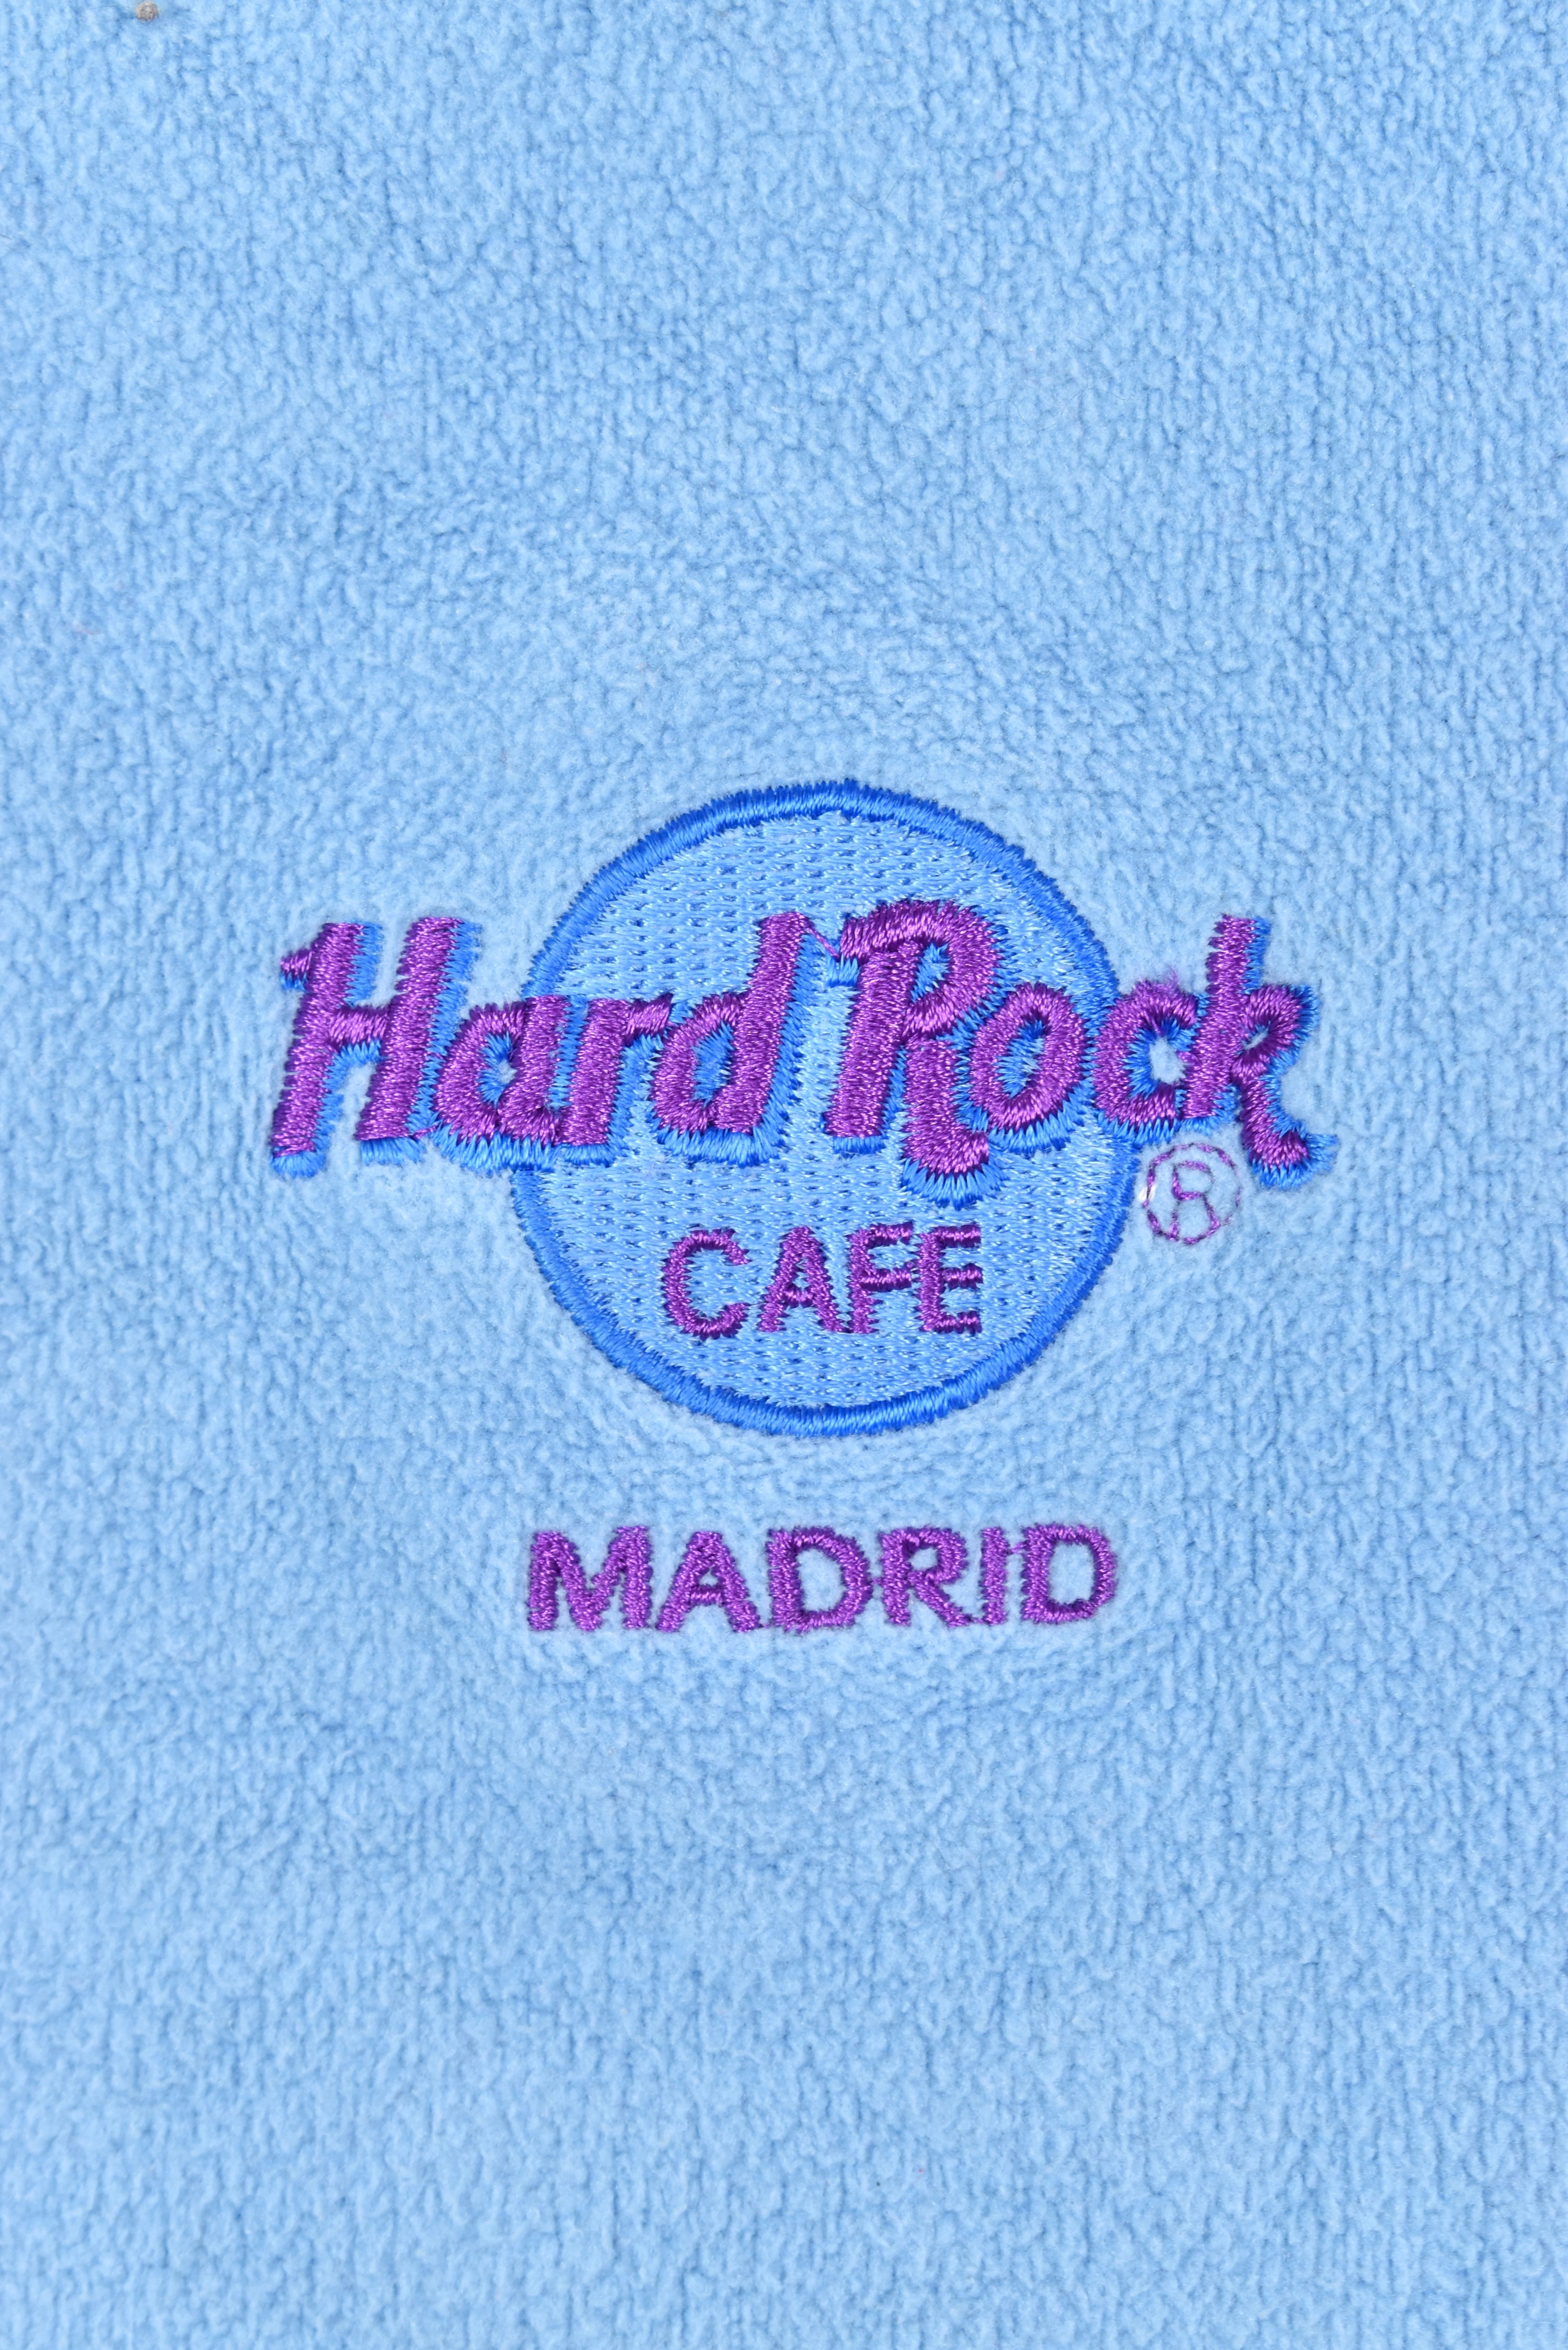 VINTAGE WOMEN'S HARD ROCK CAFE EMBROIDERED BLUE HOODIE | LARGE HARD ROCK CAFE